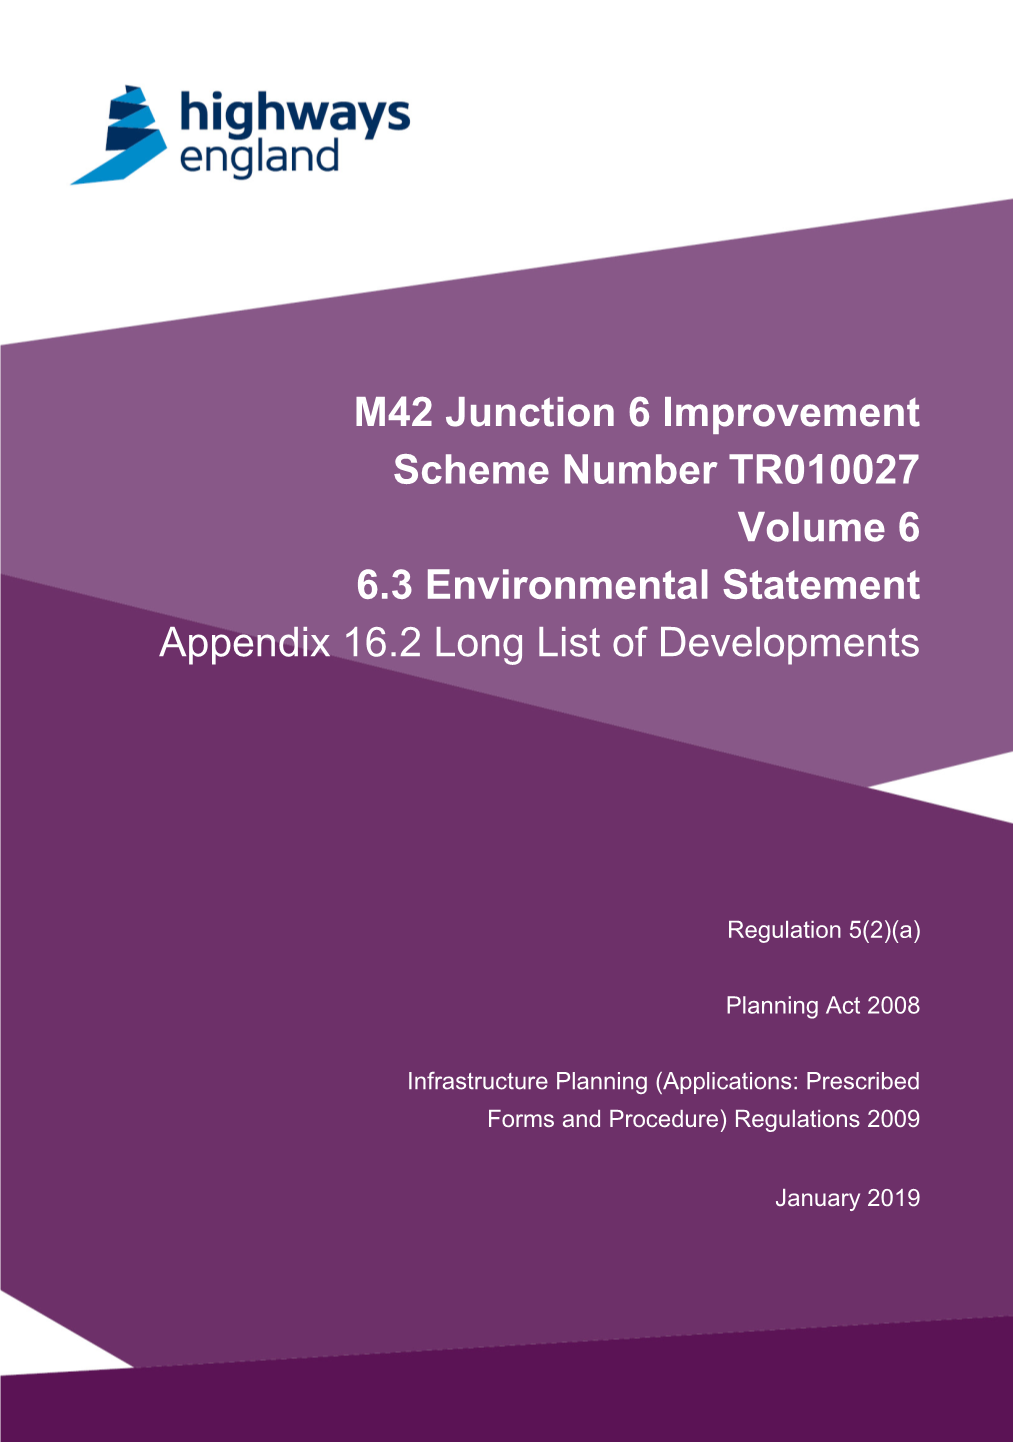 M42 Junction 6 Improvement Scheme Number TR010027 Volume 6 6.3